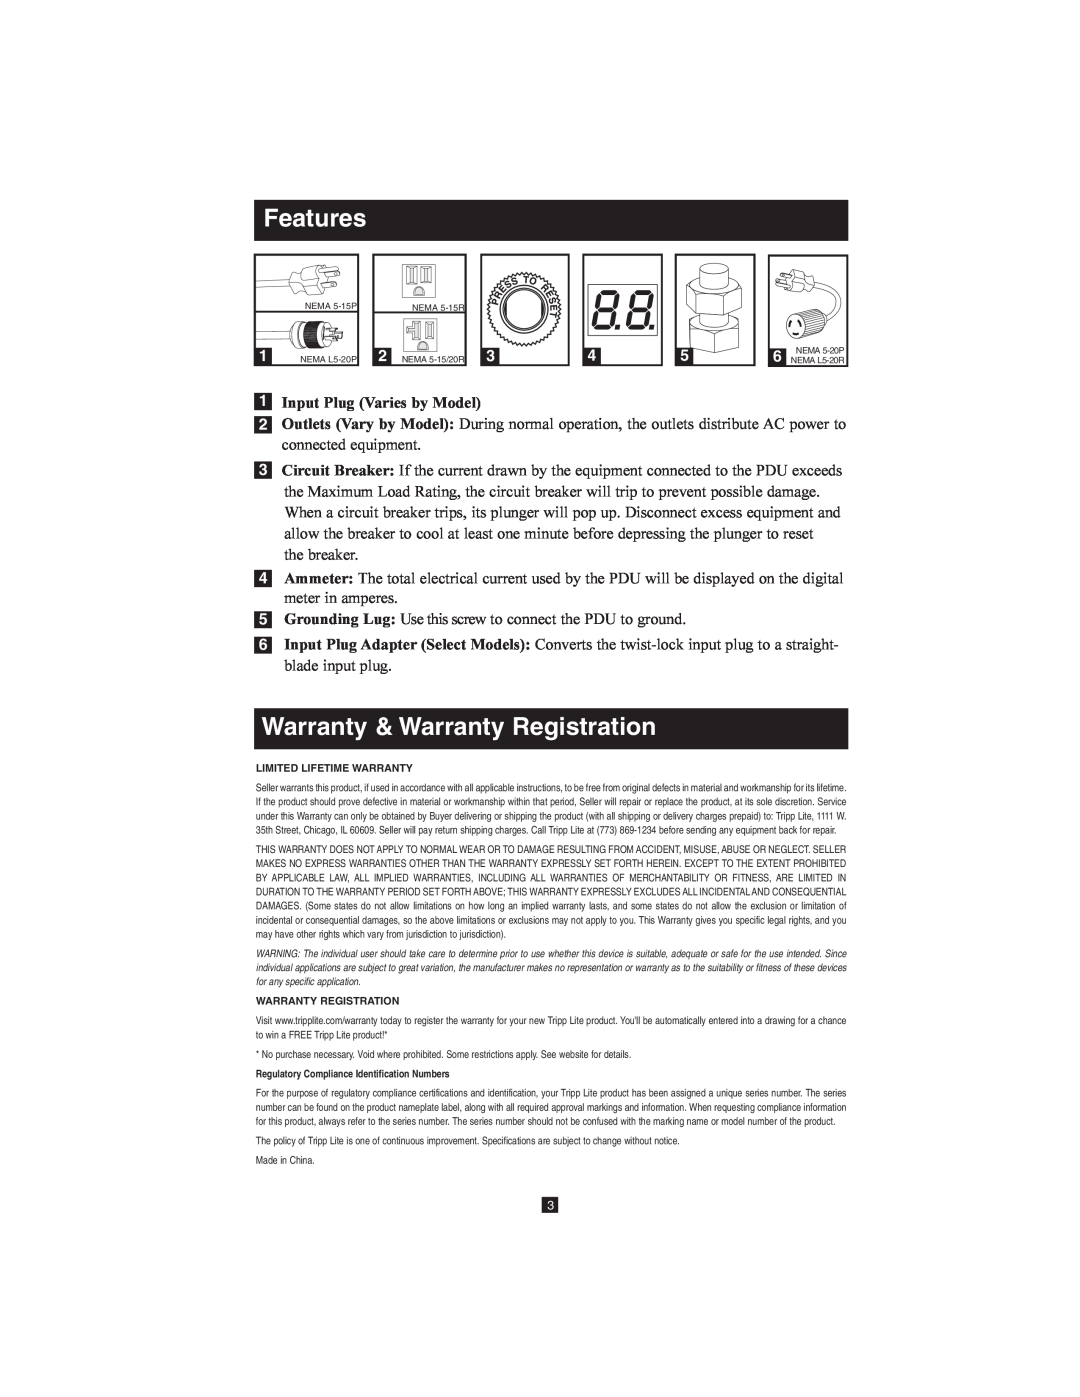 Tripp Lite Metered Rack PDU owner manual Features, Warranty & Warranty Registration 